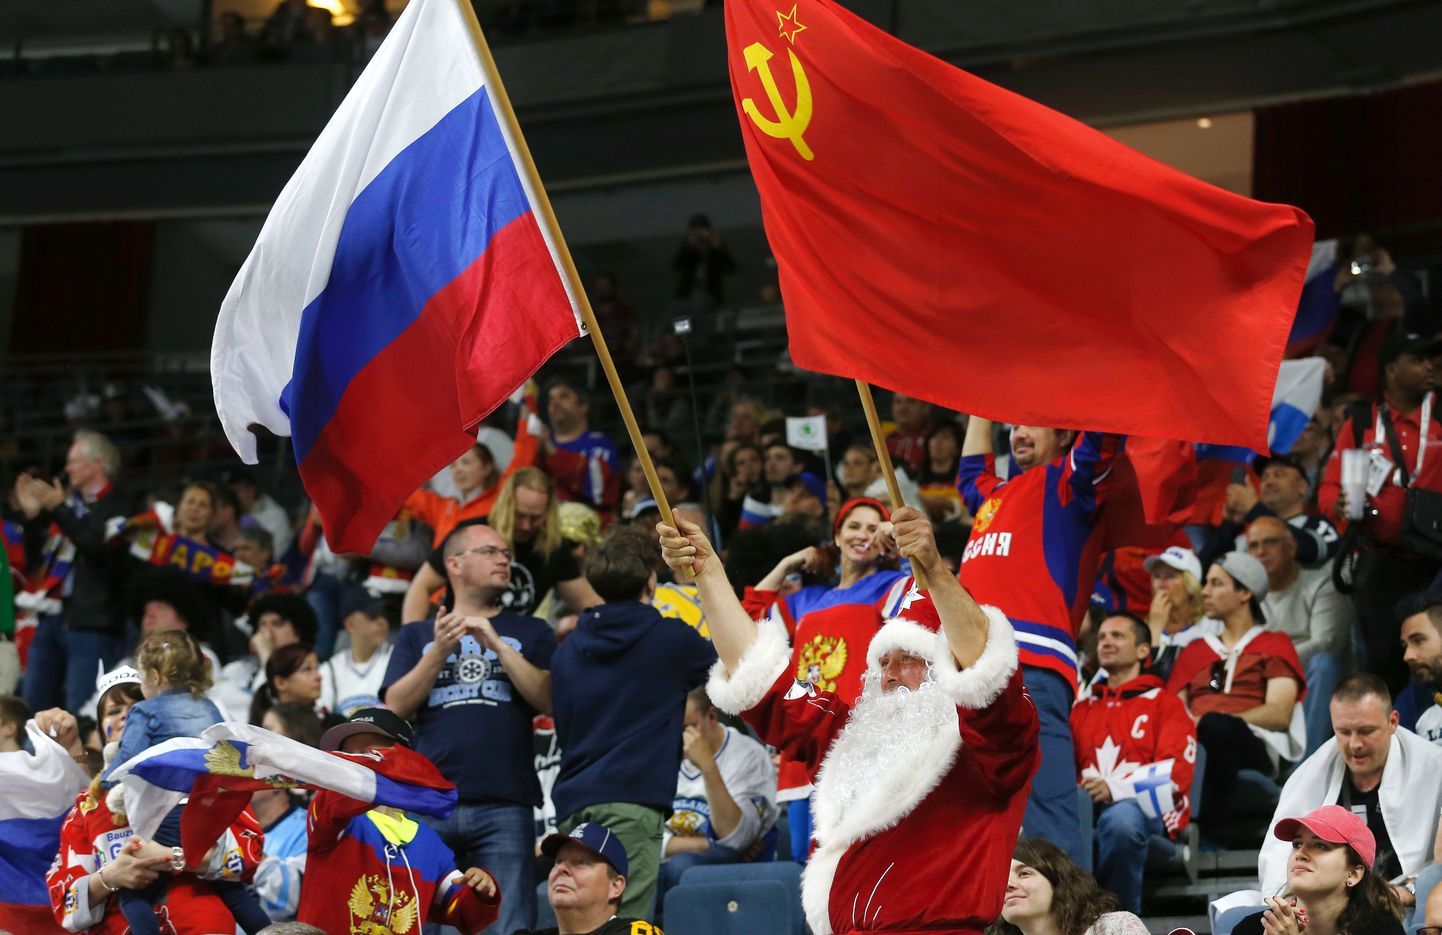 Venemaa ja Nõukogude Liidu lippe praegu ROKi sõnul olümpiamängudel lehvitada ei tohi. Kas see muutub?